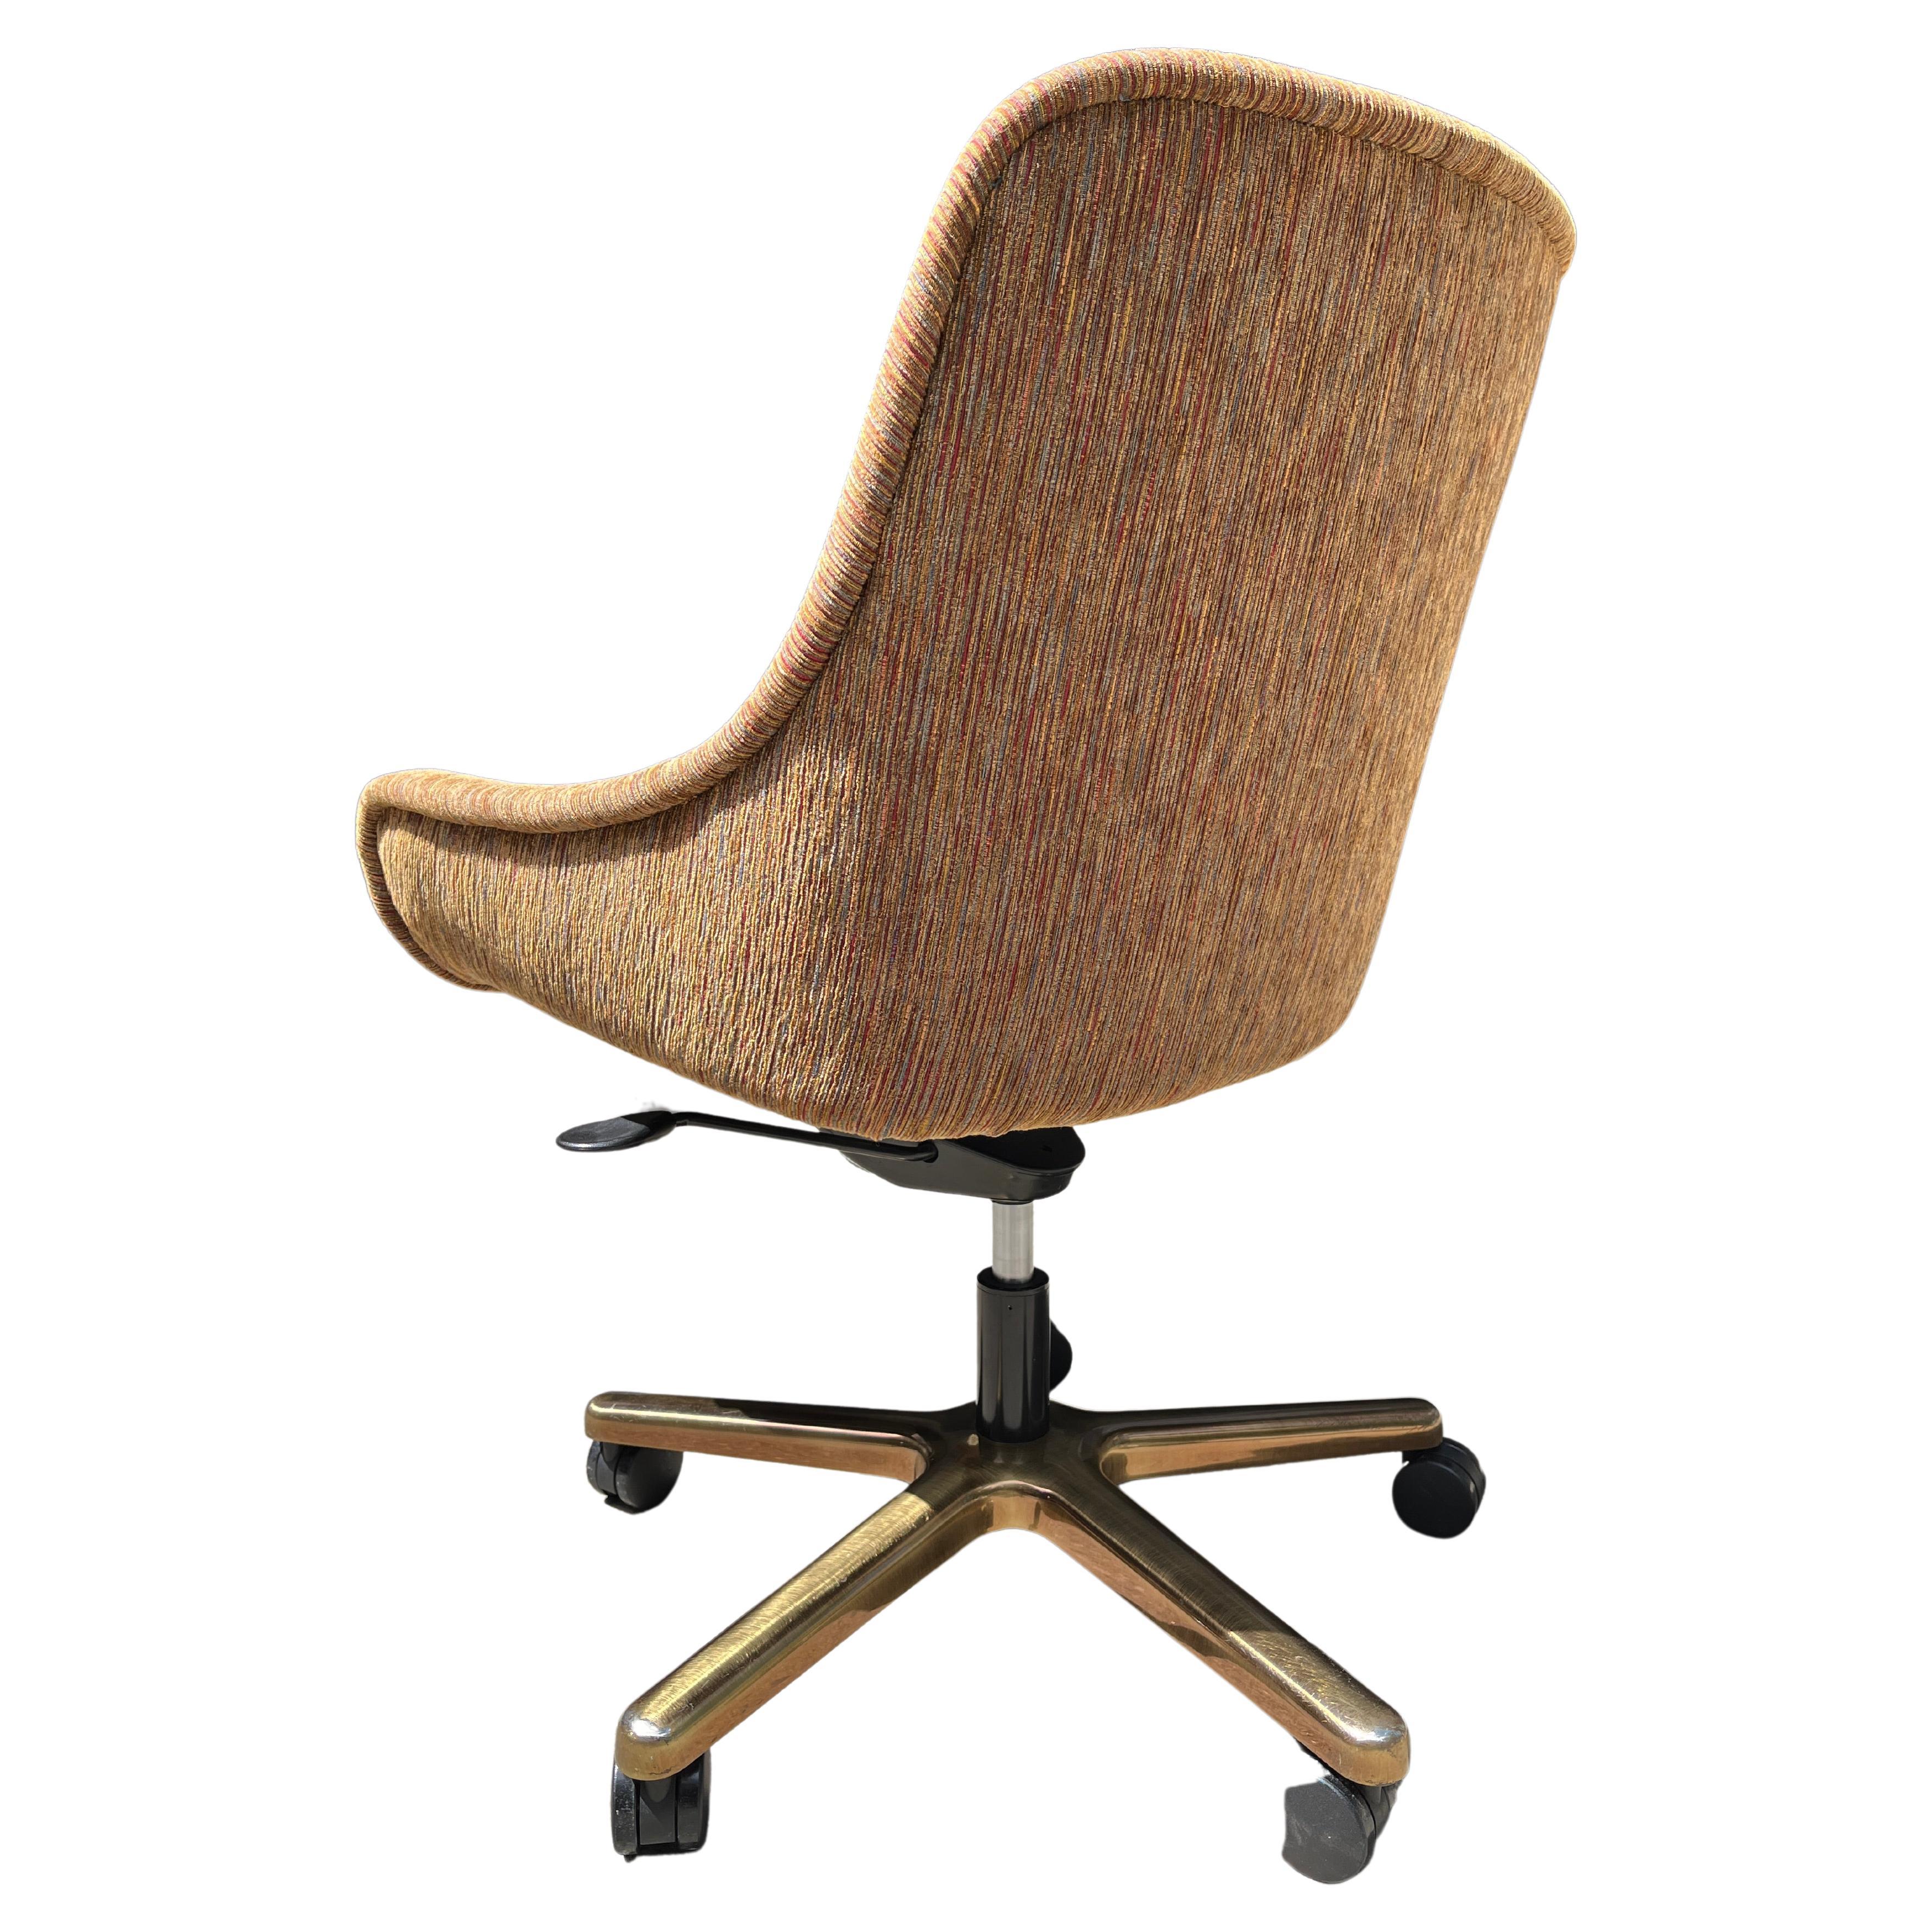 selorr office chair